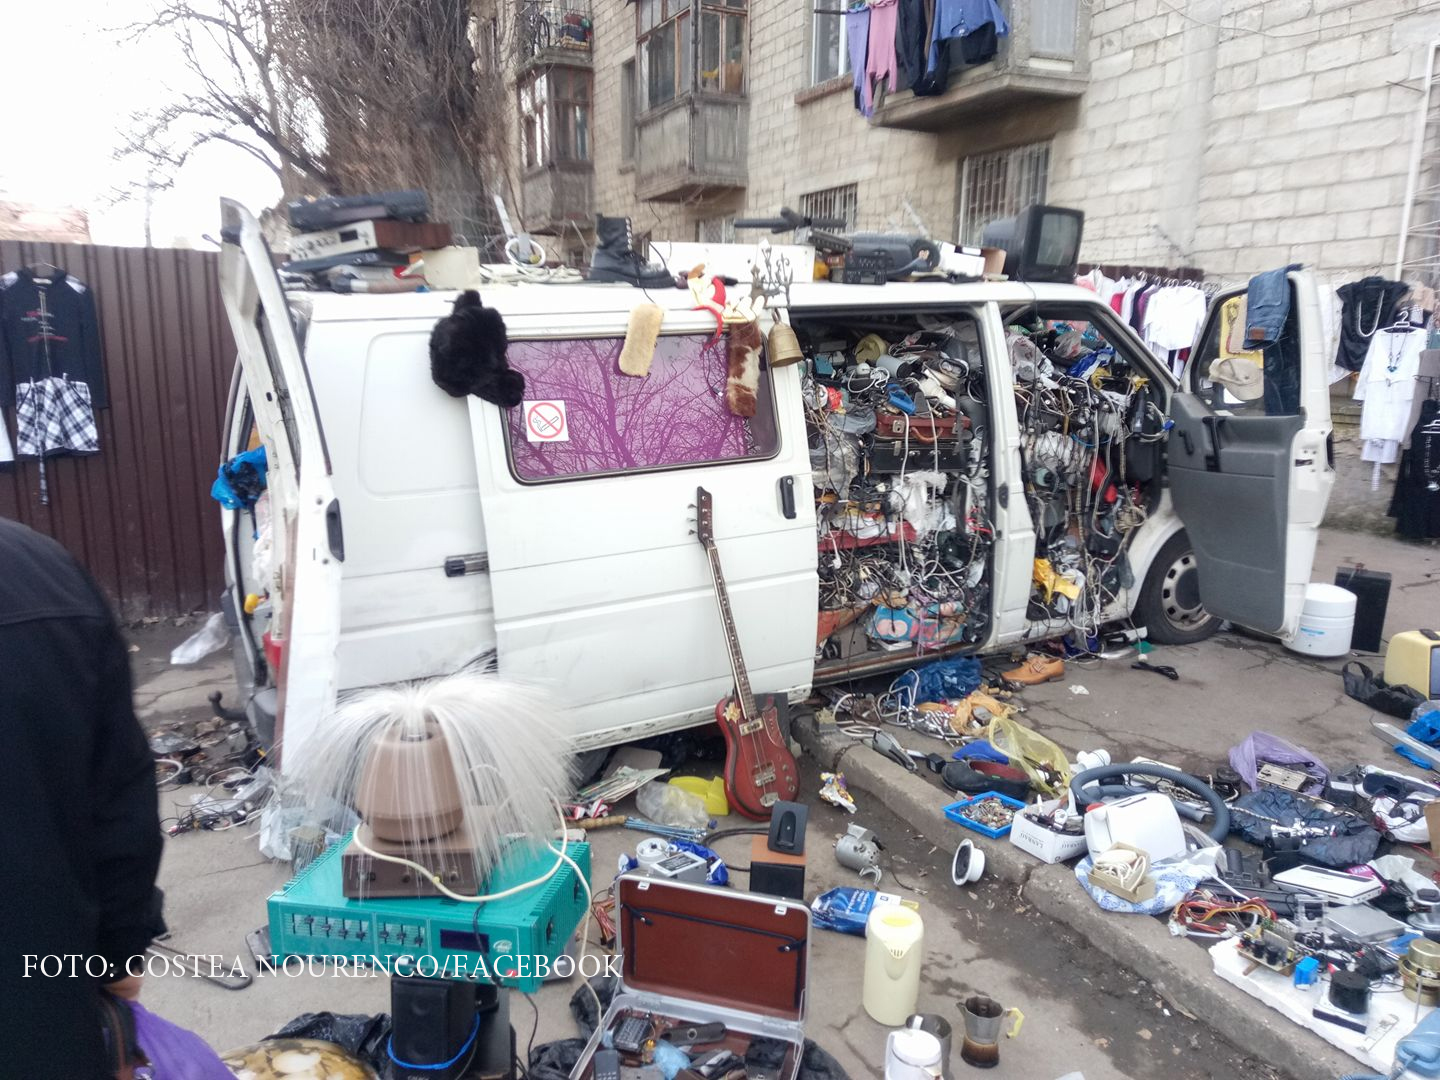 Imaginea-simbol a saraciei din Moldova. Un veteran de razboi a umplut un microbuz cu 2 tone de vechituri pe care le vinde